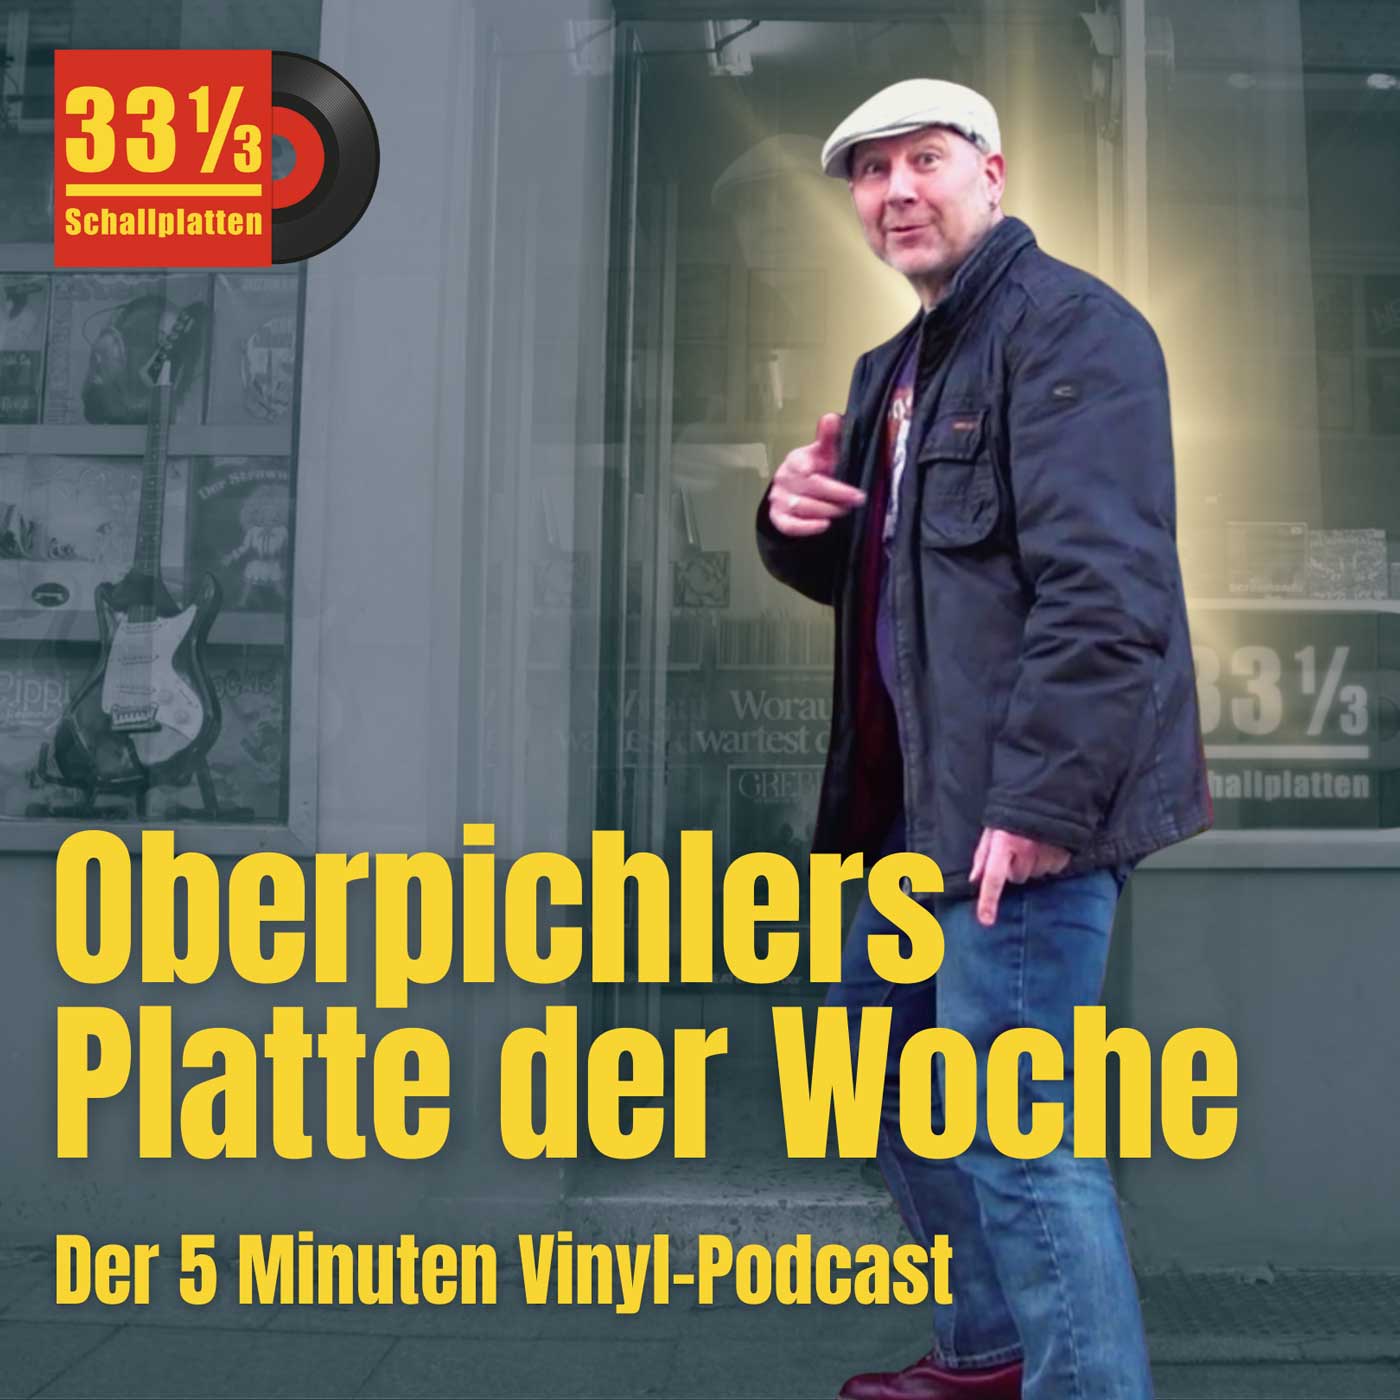 Oberpichlers Platte der Woche als 5-Minuten Podcast